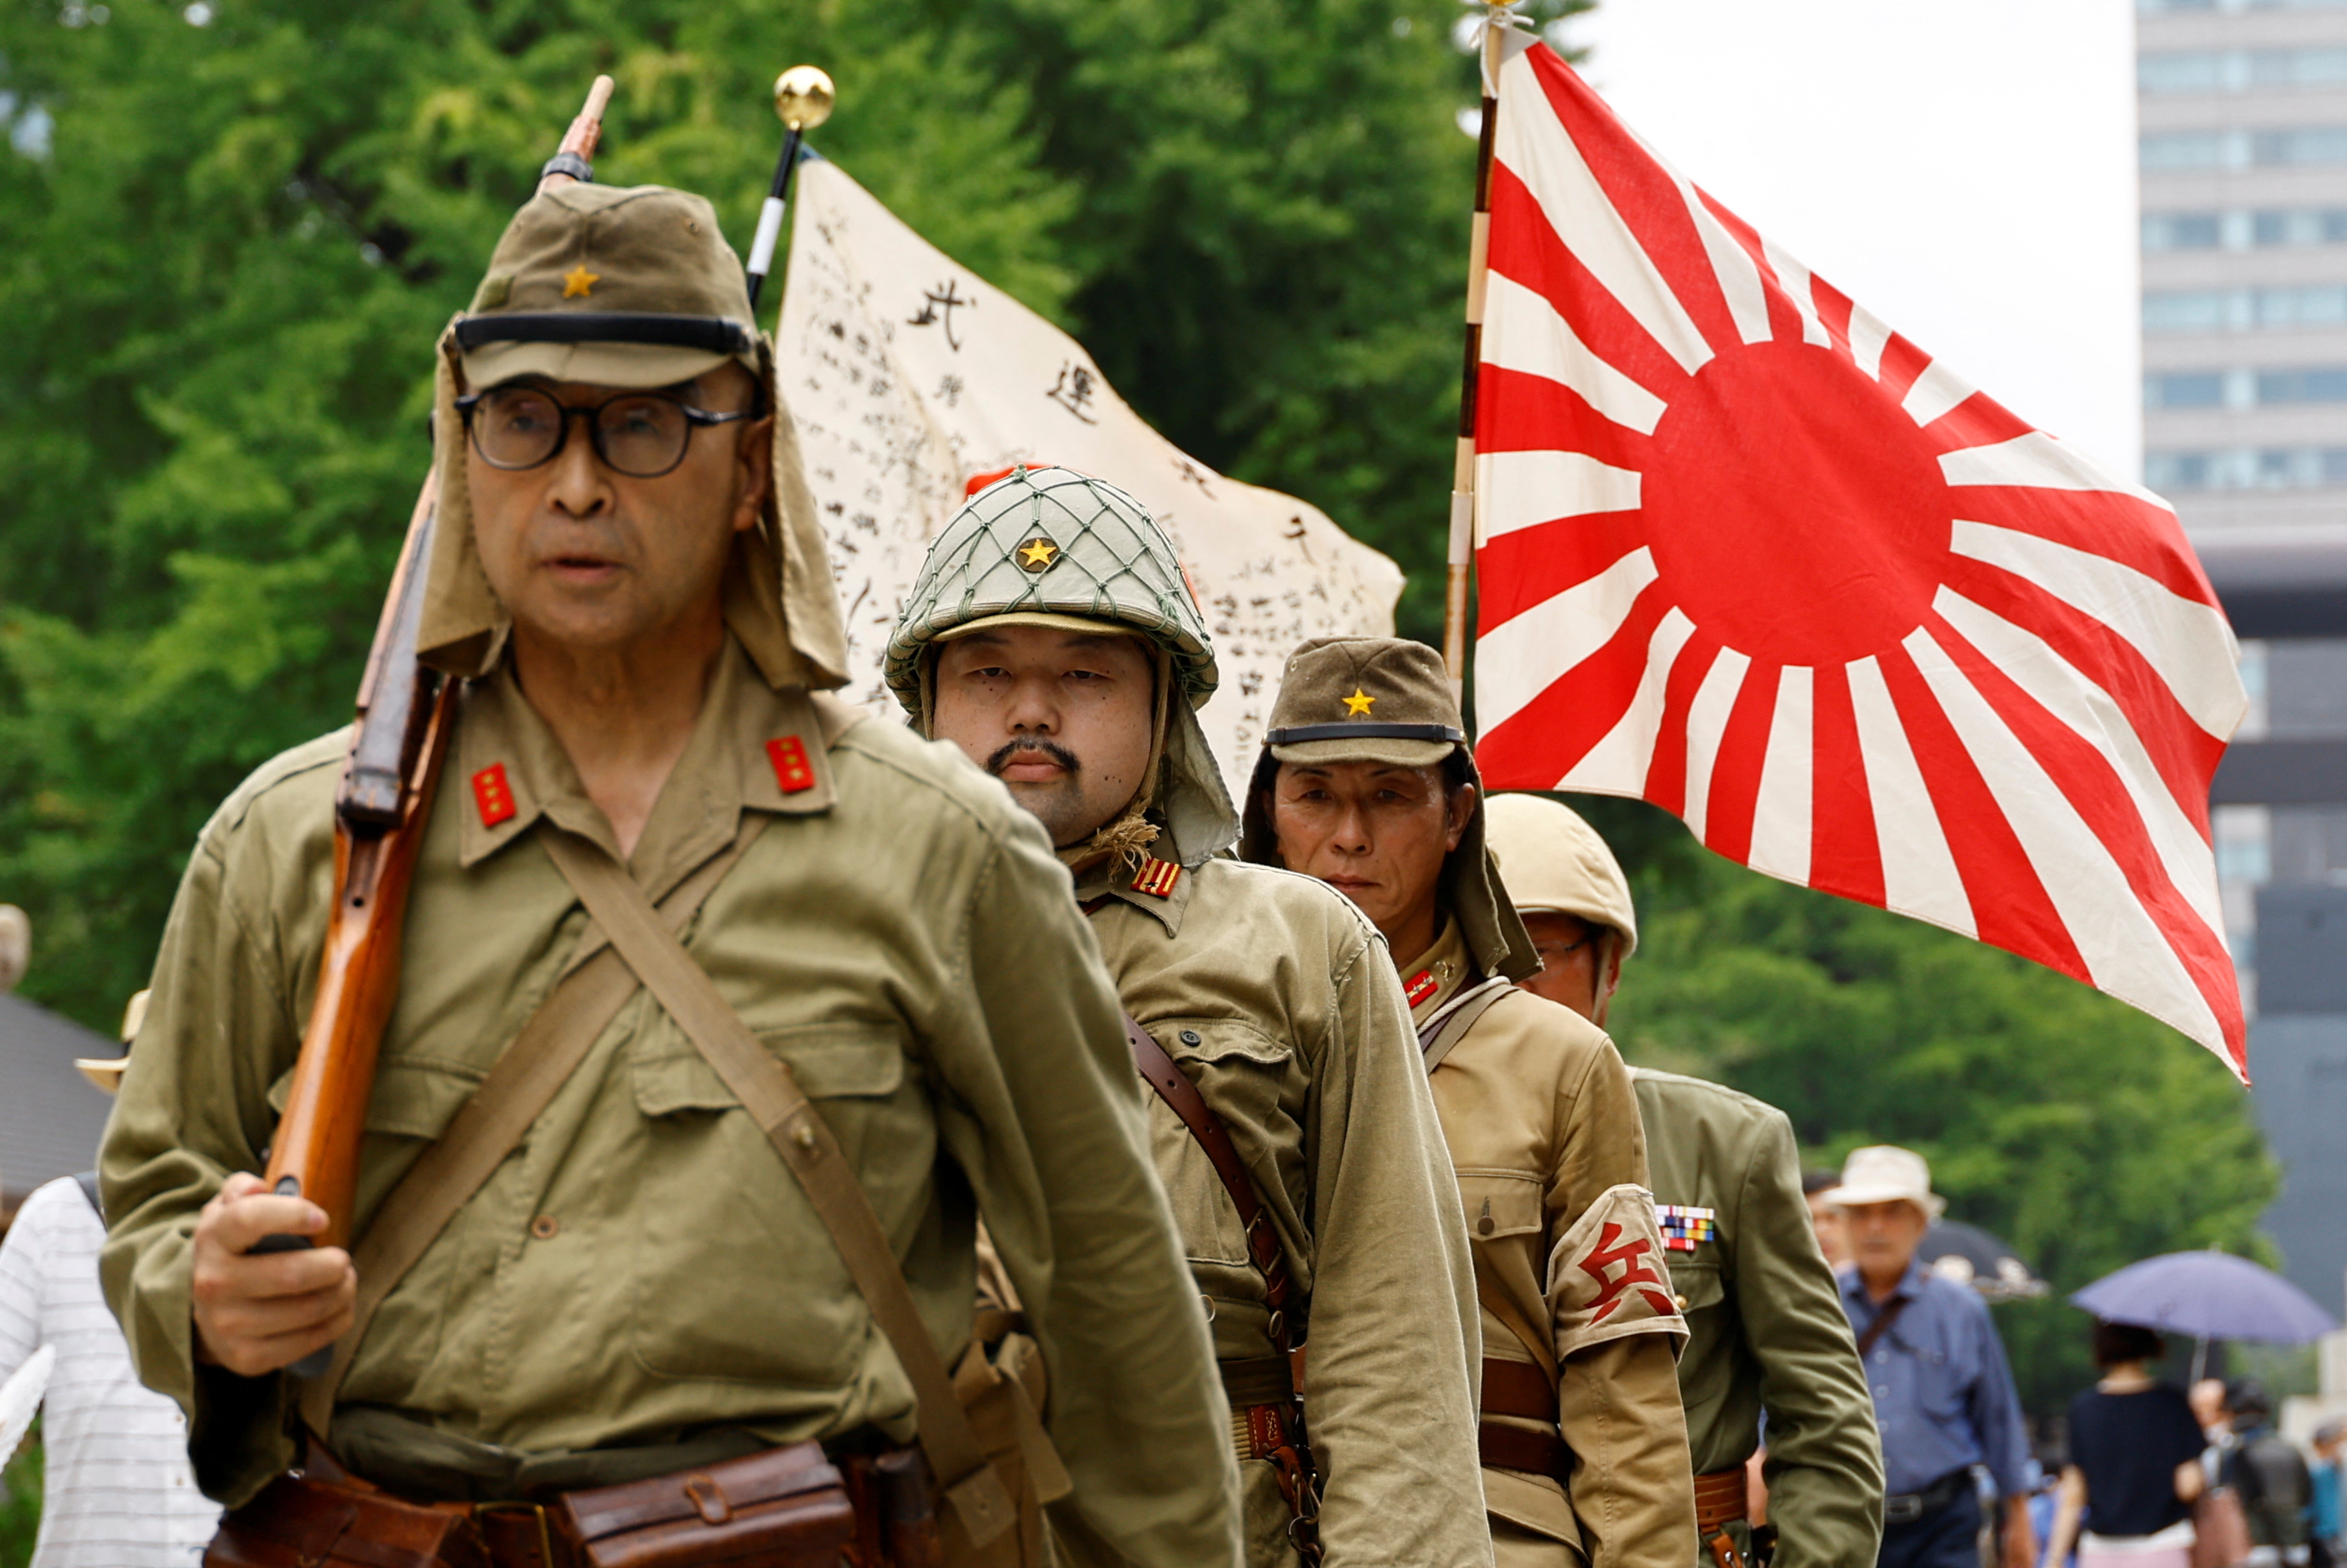 Wojska Cesarstwa Japonii są odpowiedzialne za straszne zbrodnie w czasie II wojny światowej. Ta historia wciąż wywołuje nieufność wobec Japończyków w wielu krajach Azji